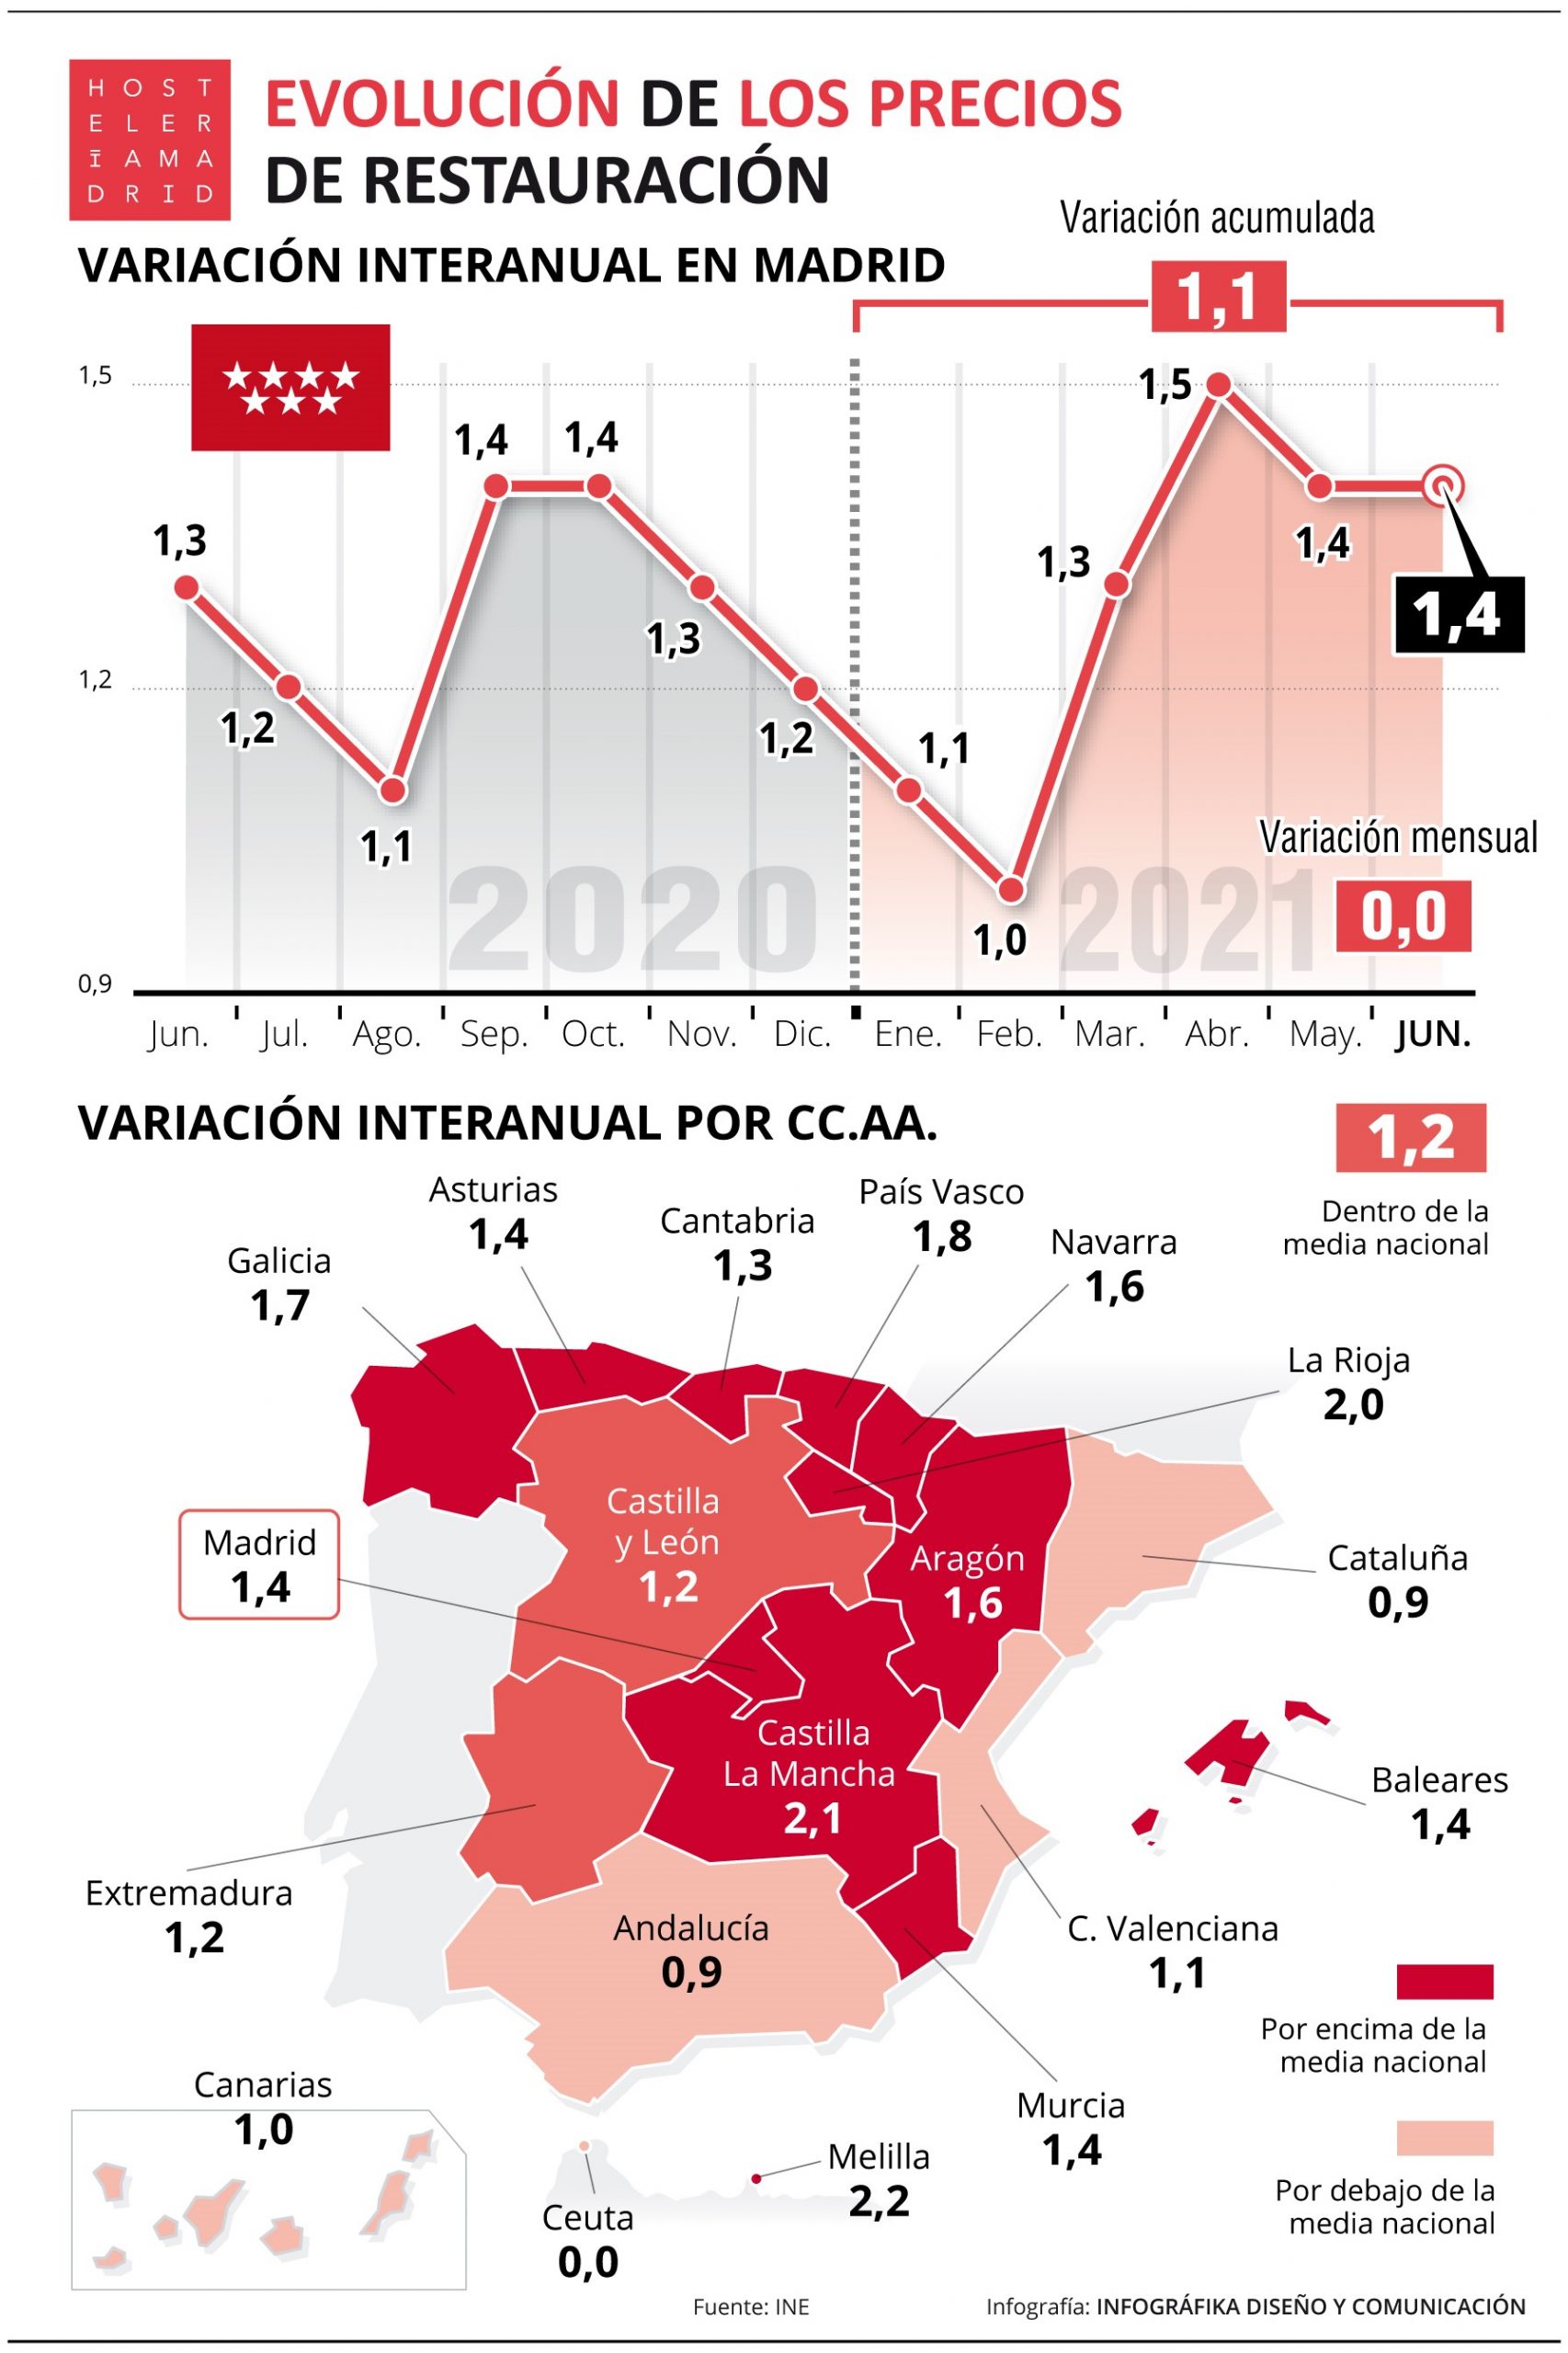 Madrid repite la subida de precios de restauración en junio - La Viña